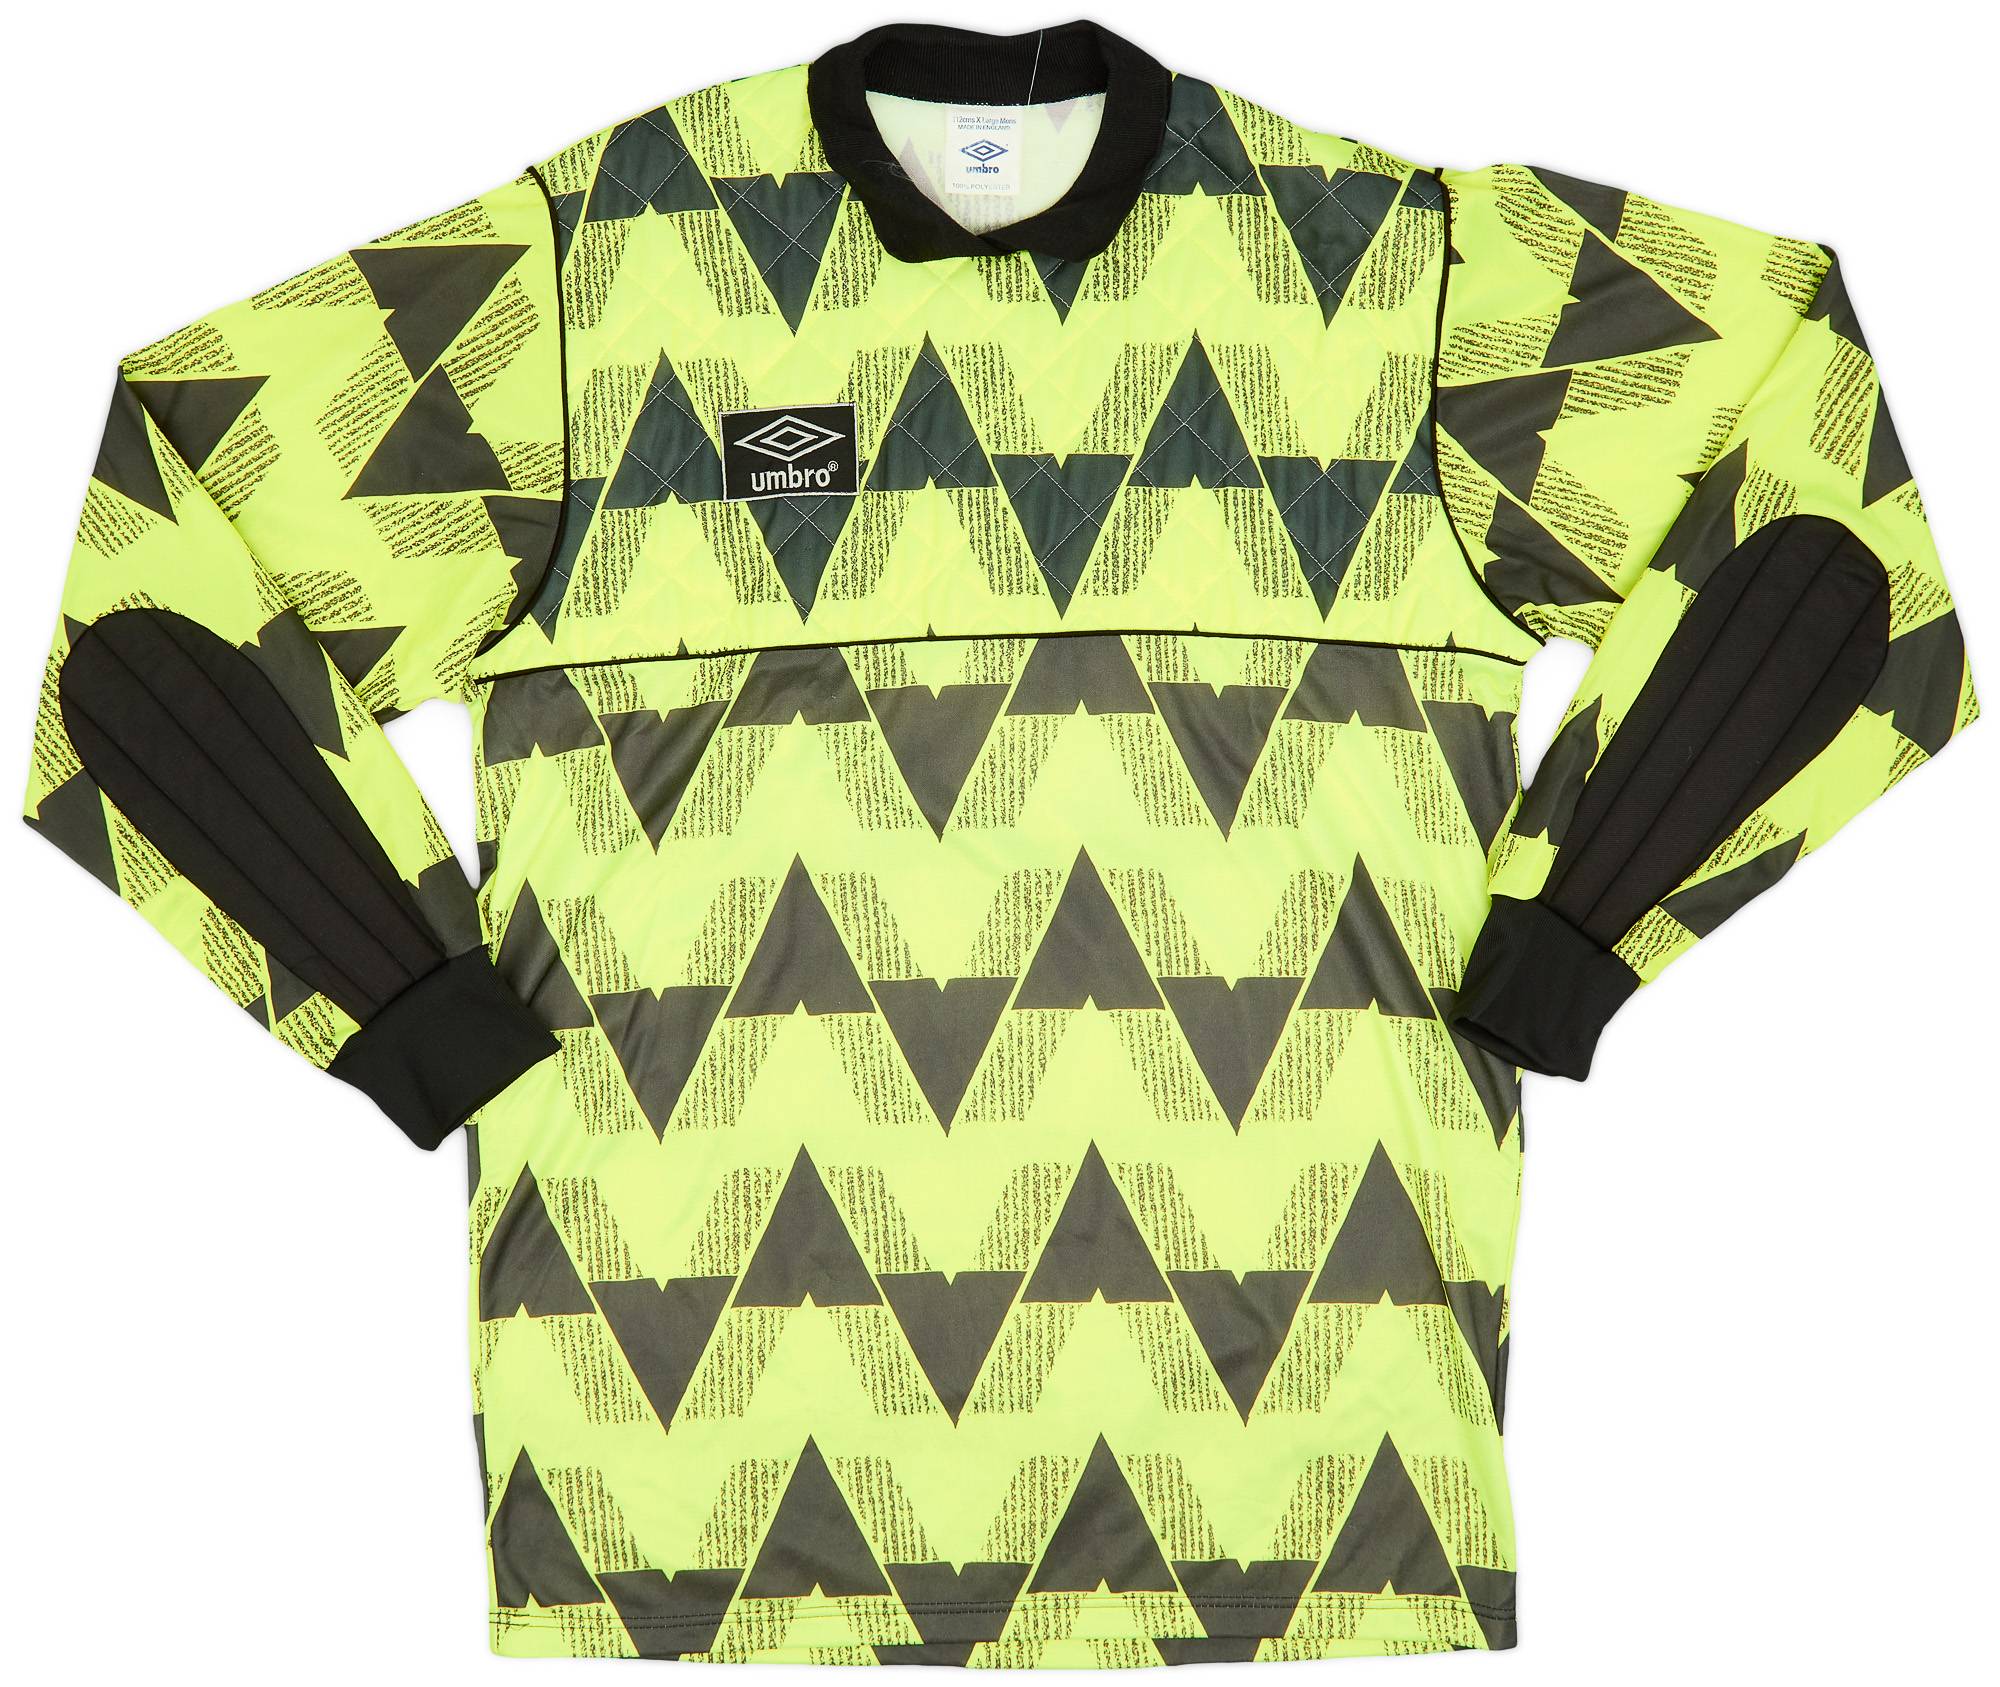 1990-91 Umbro GK Template Shirt #1 - 9/10 - (XL)